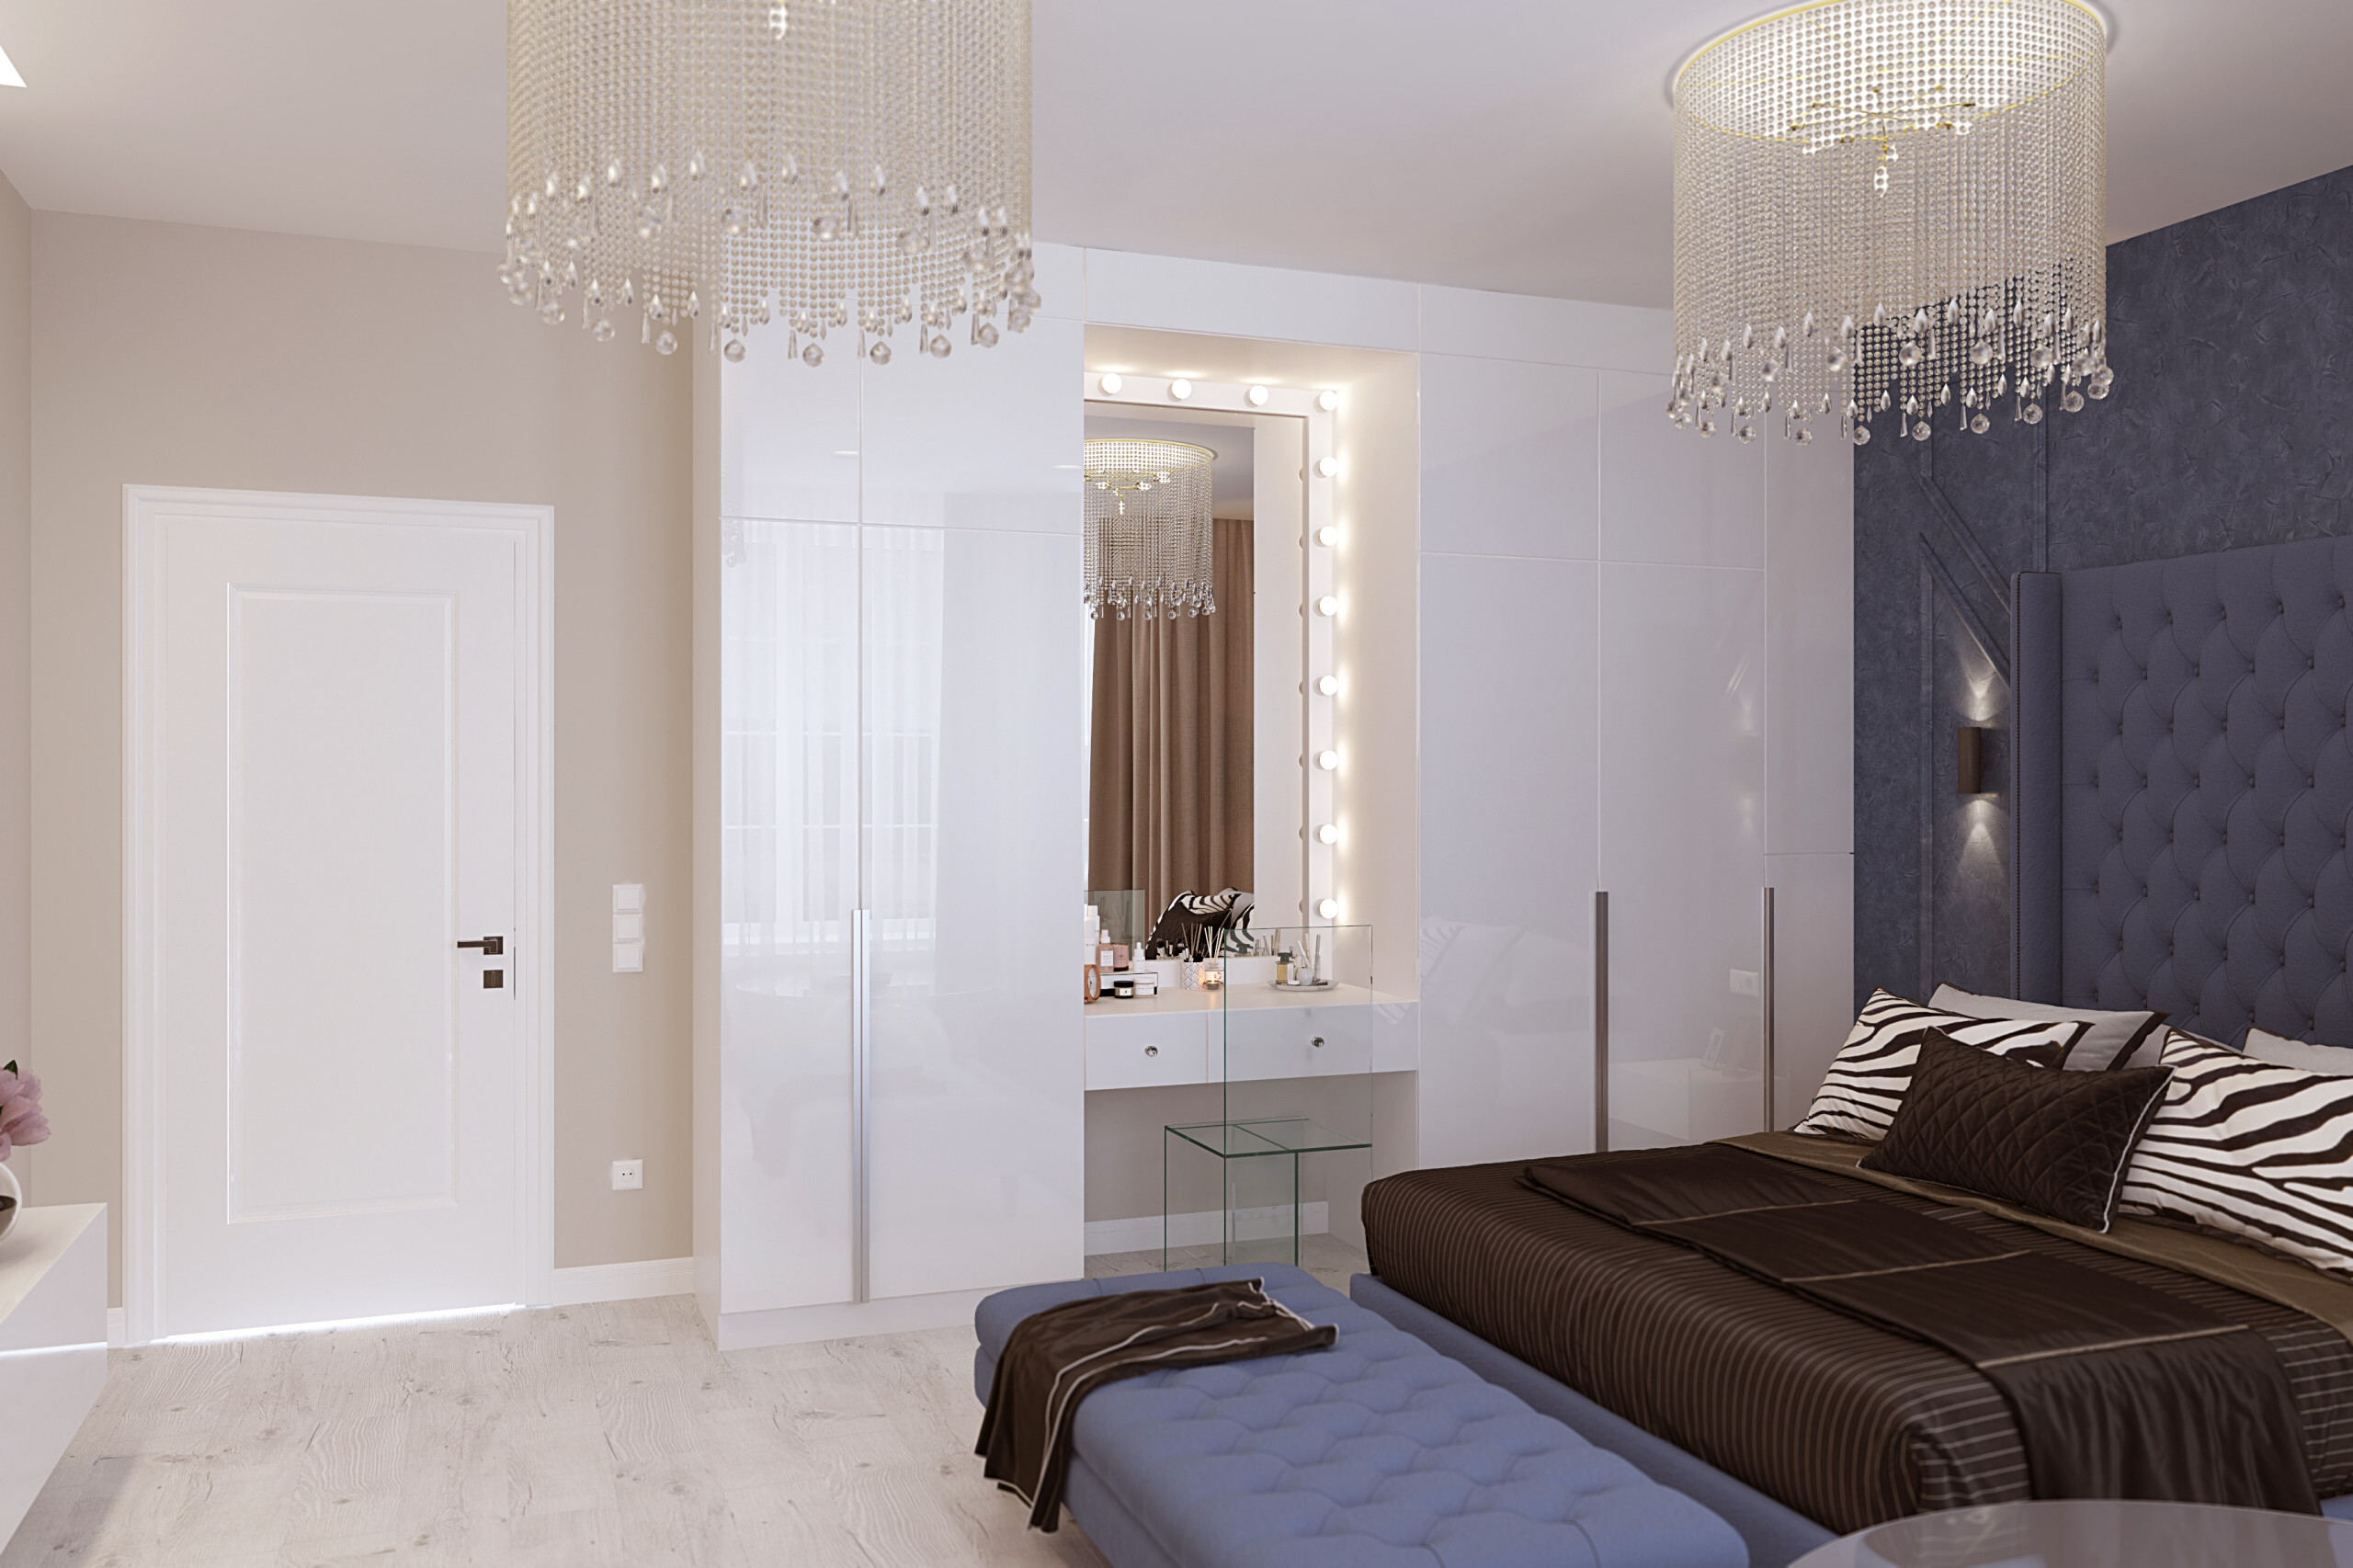 Интерьер спальни с зеркалом на двери, подсветкой настенной и подсветкой светодиодной